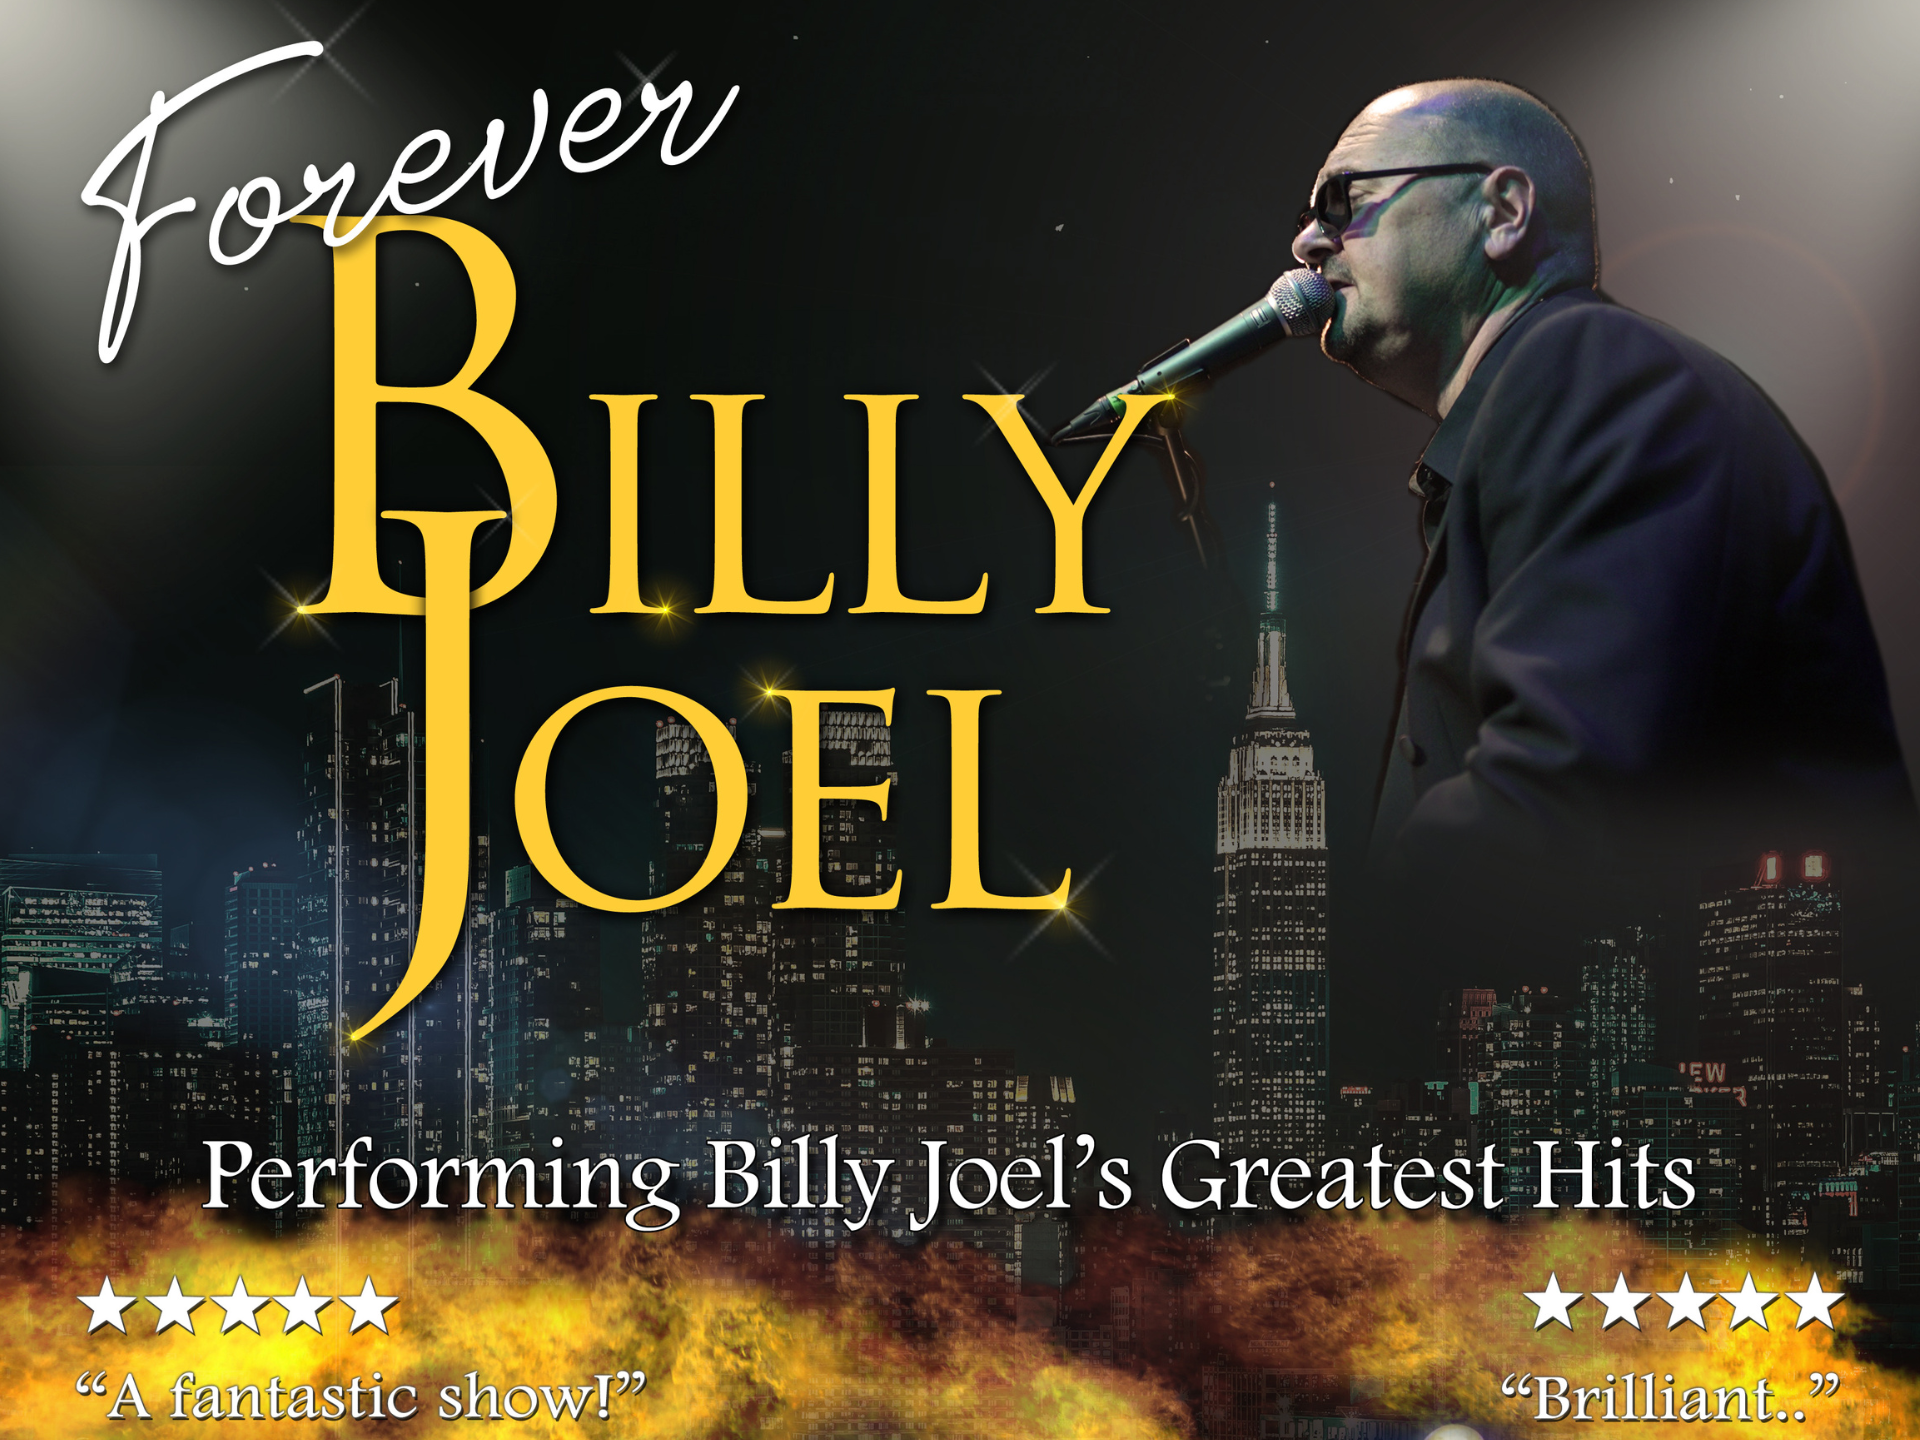 Forever Billy Joel